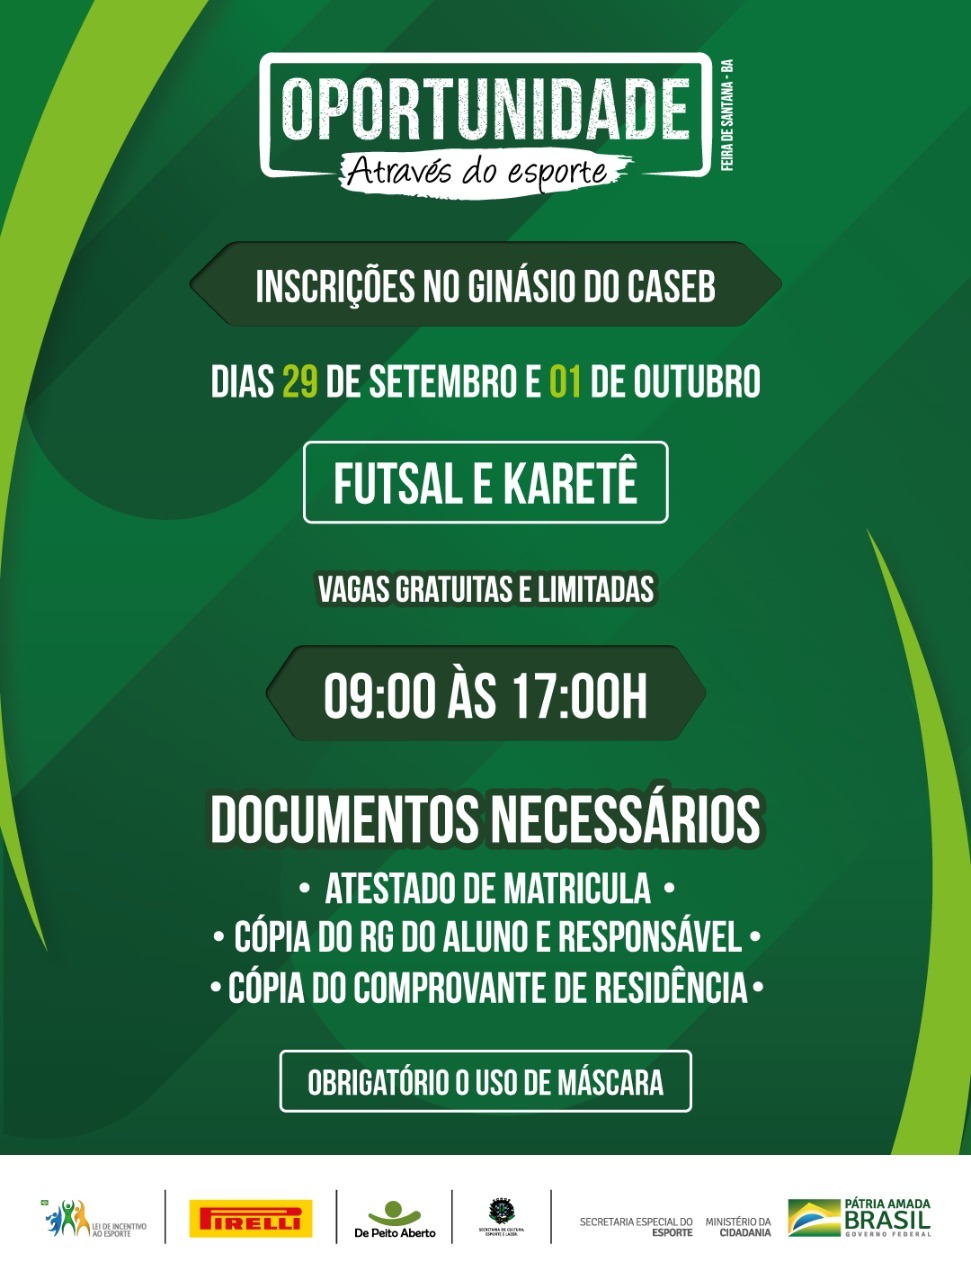  Projeto Oportunidade Através do Esporte abre vagas para aulas gratuitas de futsal e karatê em Feira de Santana